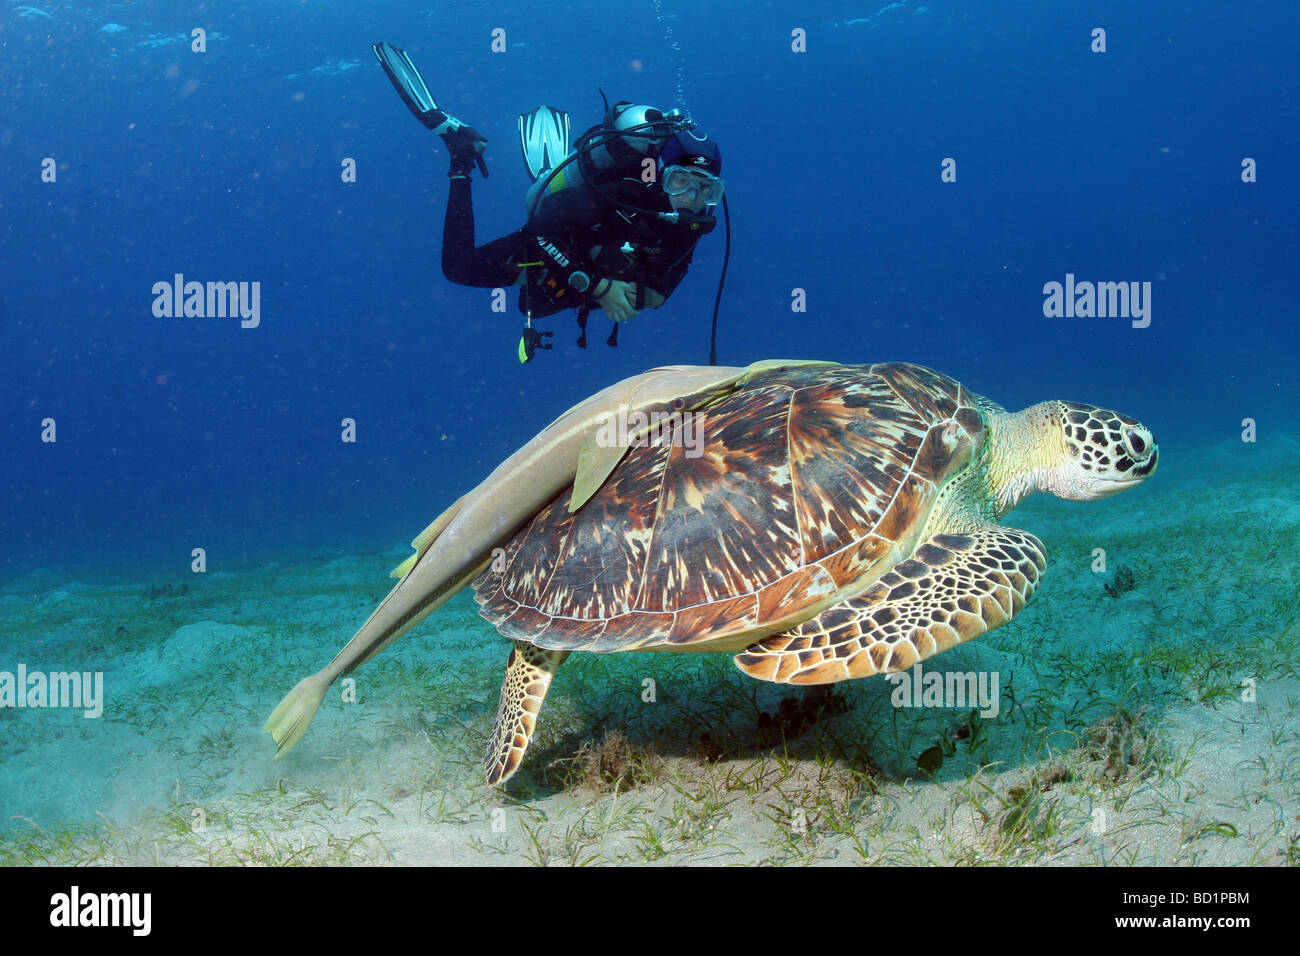 Incontro con una tartaruga embricata mentre le immersioni nel Mar Rosso nei pressi di Marsa Alam in Egitto Foto Stock